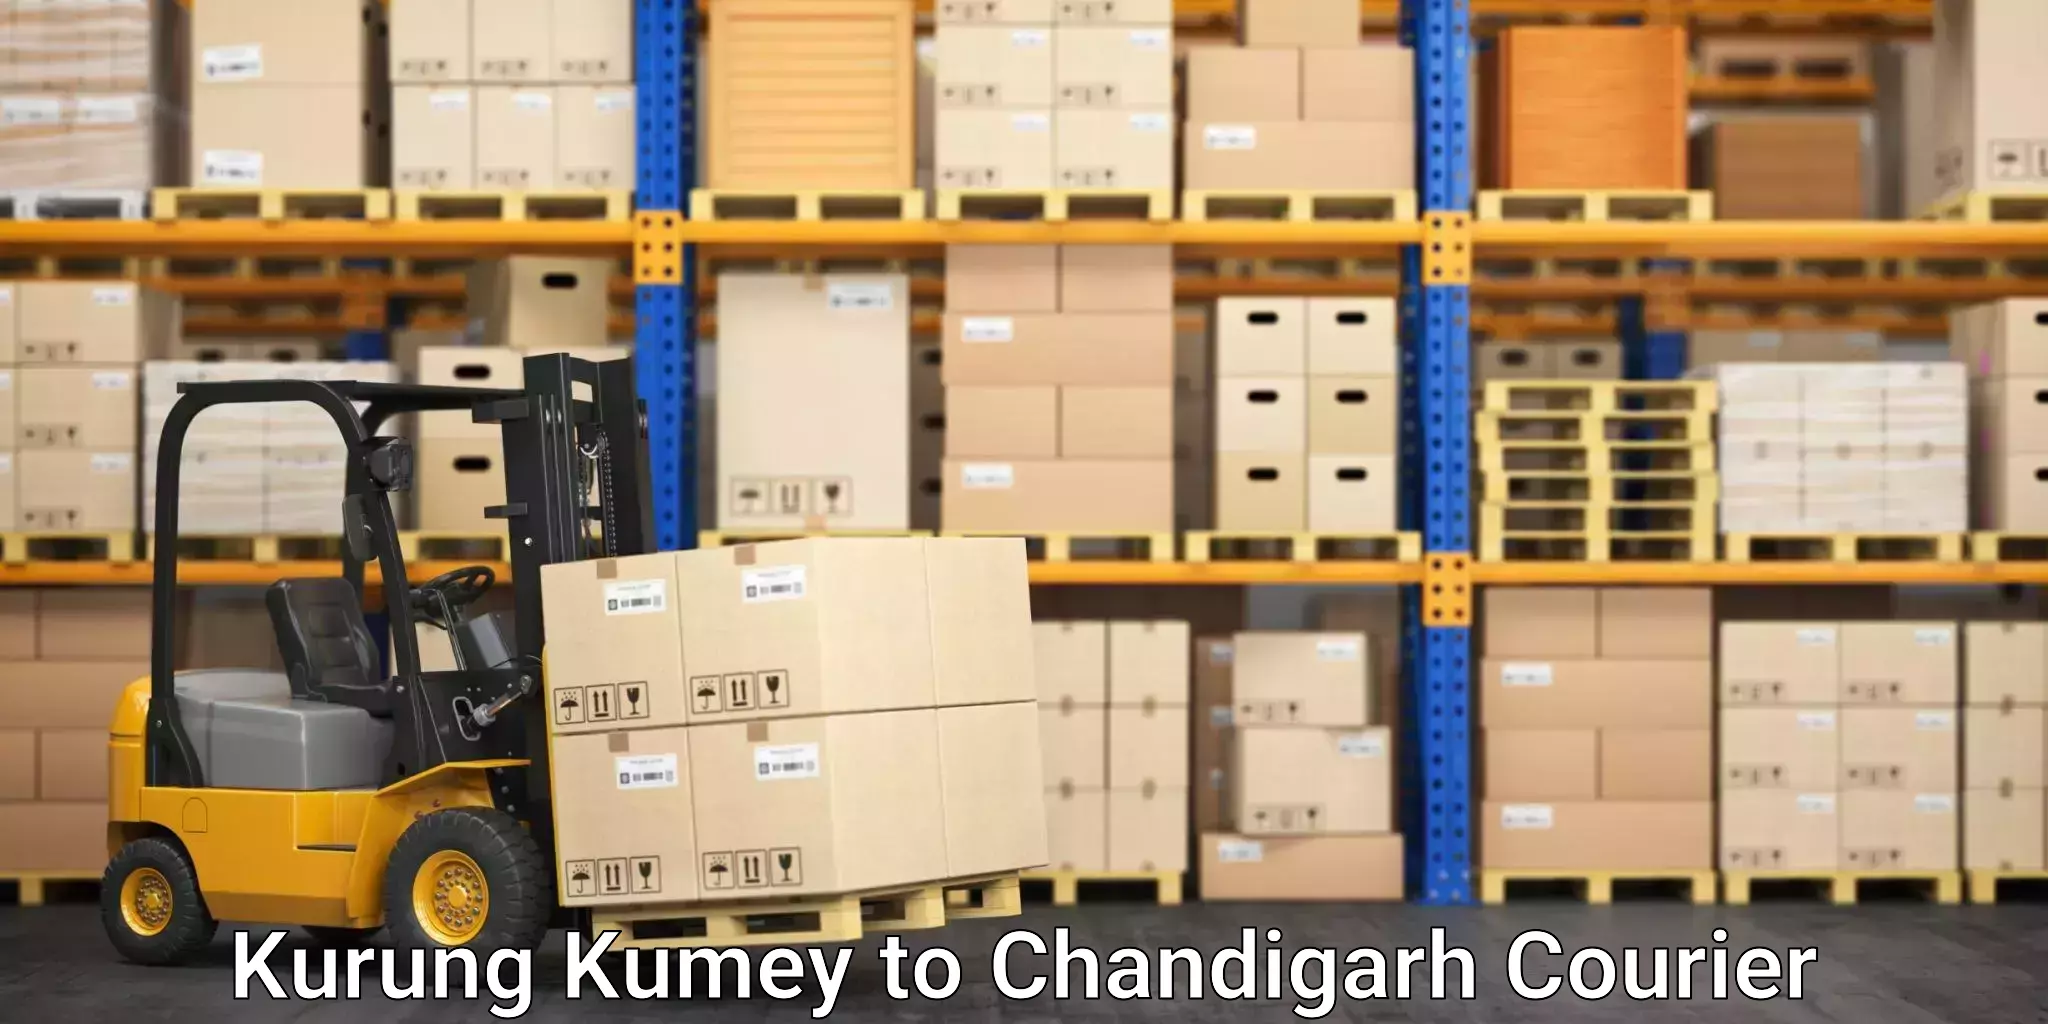 Express courier capabilities Kurung Kumey to Chandigarh